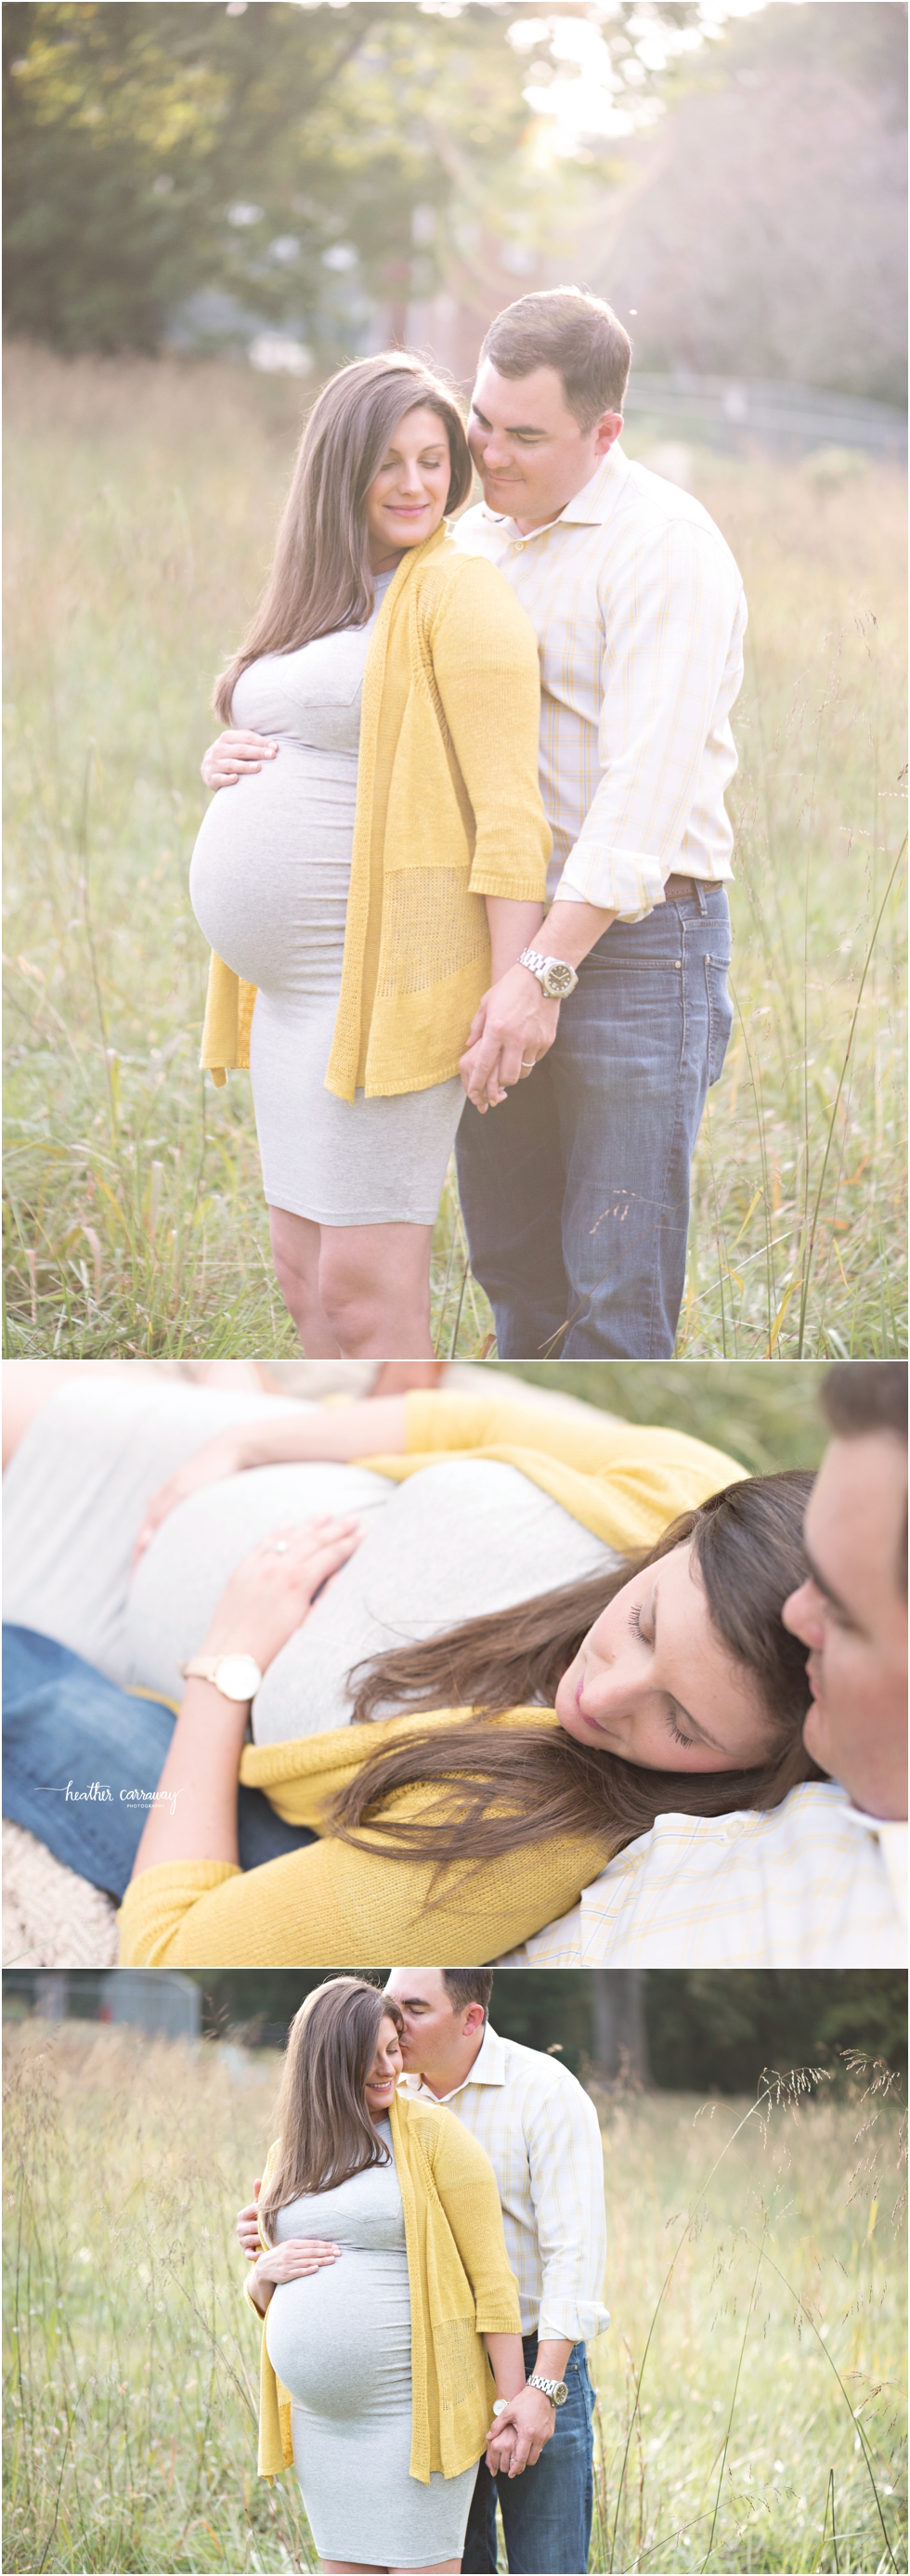 Atlanta Maternity Photographer | Atlanta Newborn Photographer | Heather Carraway Photography